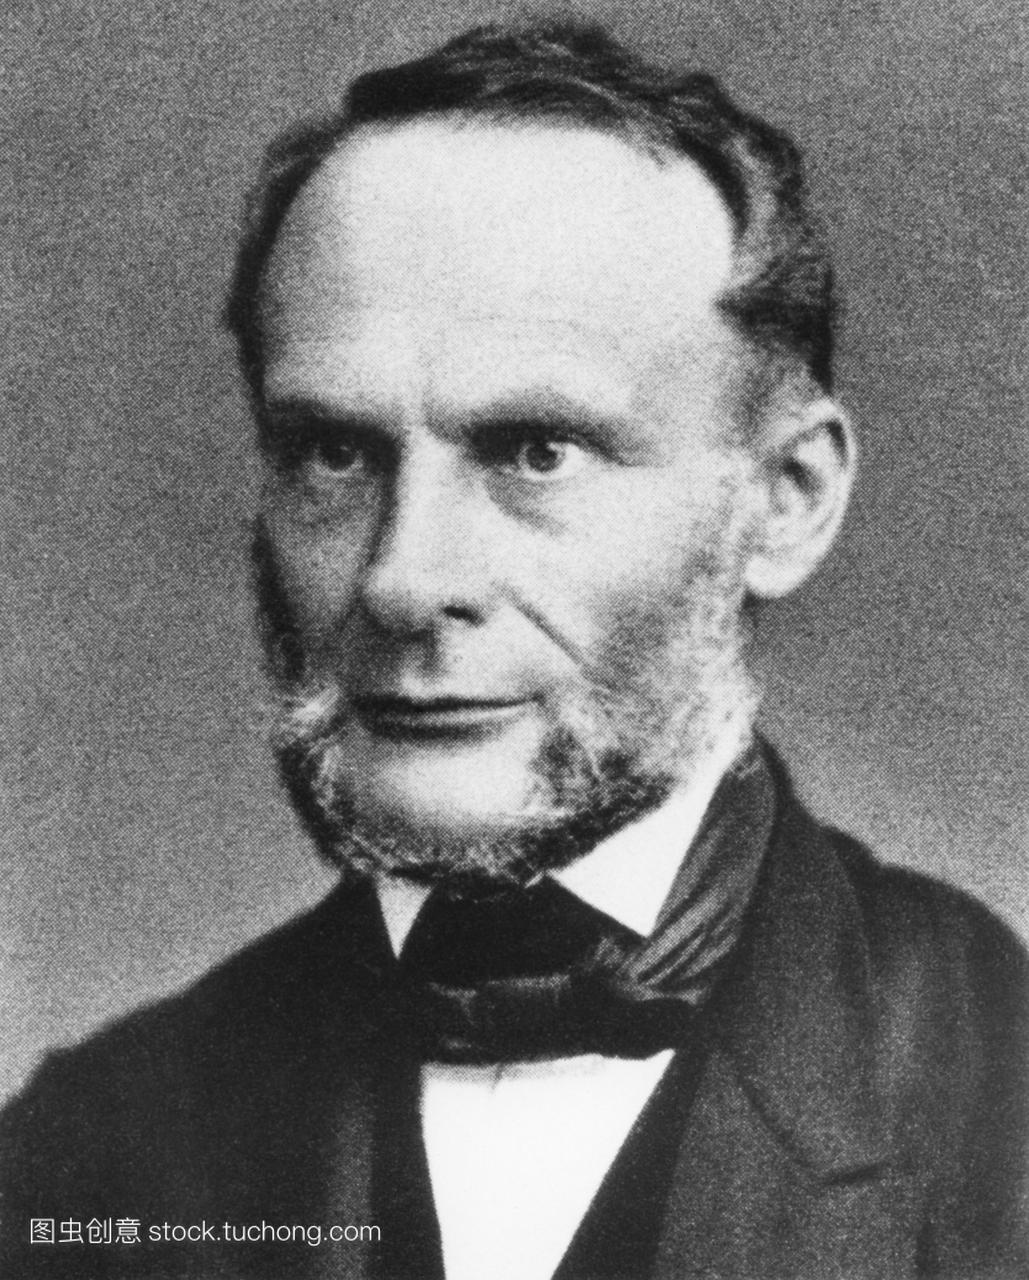 鲁道夫·克劳修斯1822-1888,德国理论物理